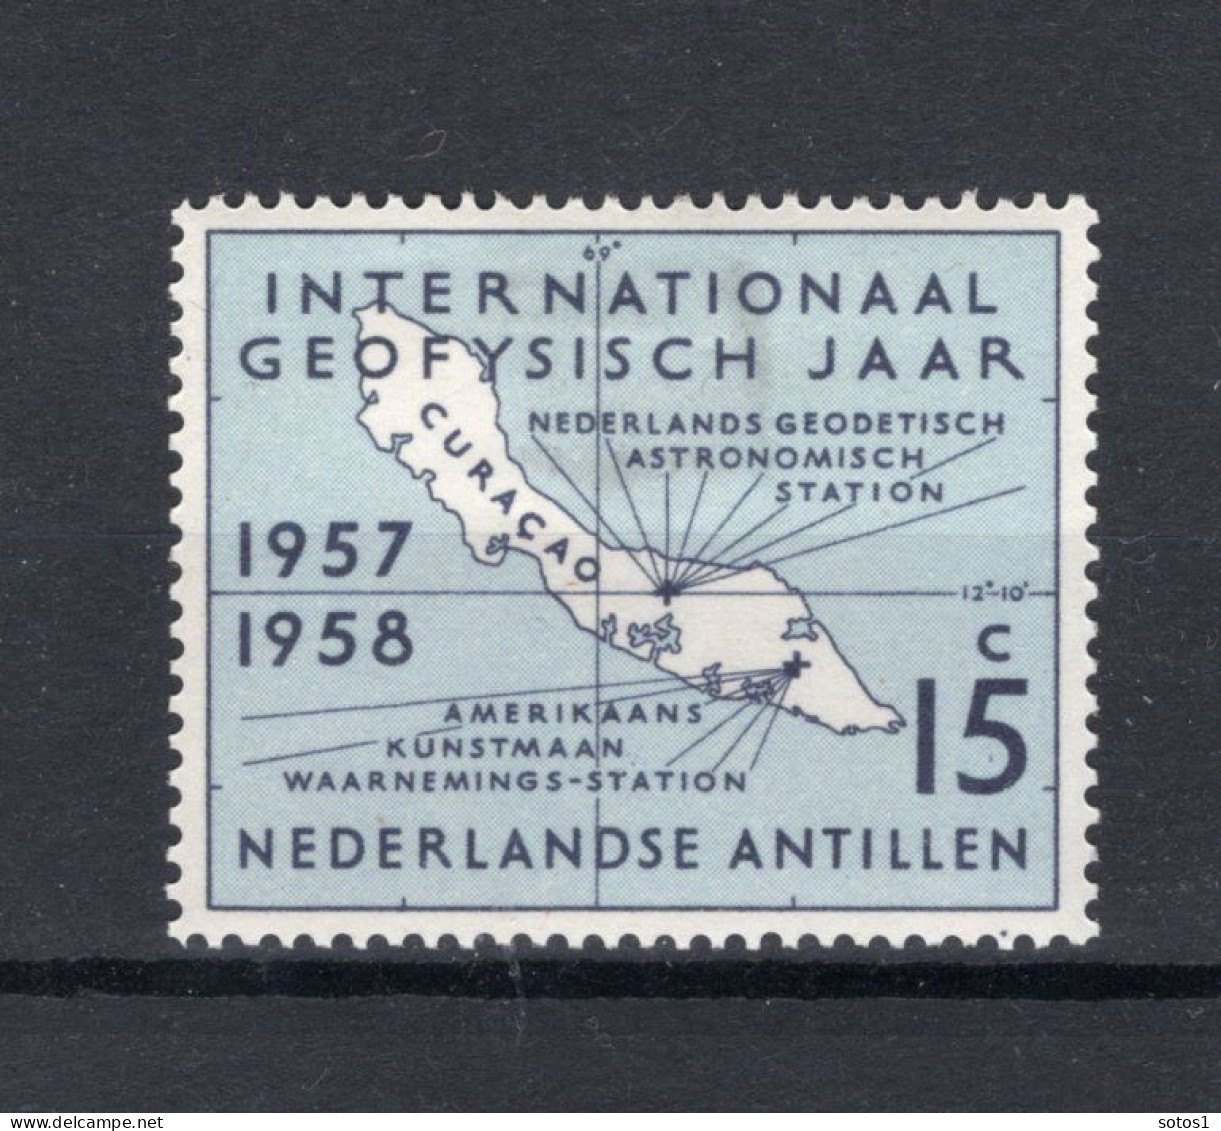 NL. ANTILLEN 270 MH 1957 - Internationaal Geofysisch Jaar. -1 - Niederländische Antillen, Curaçao, Aruba